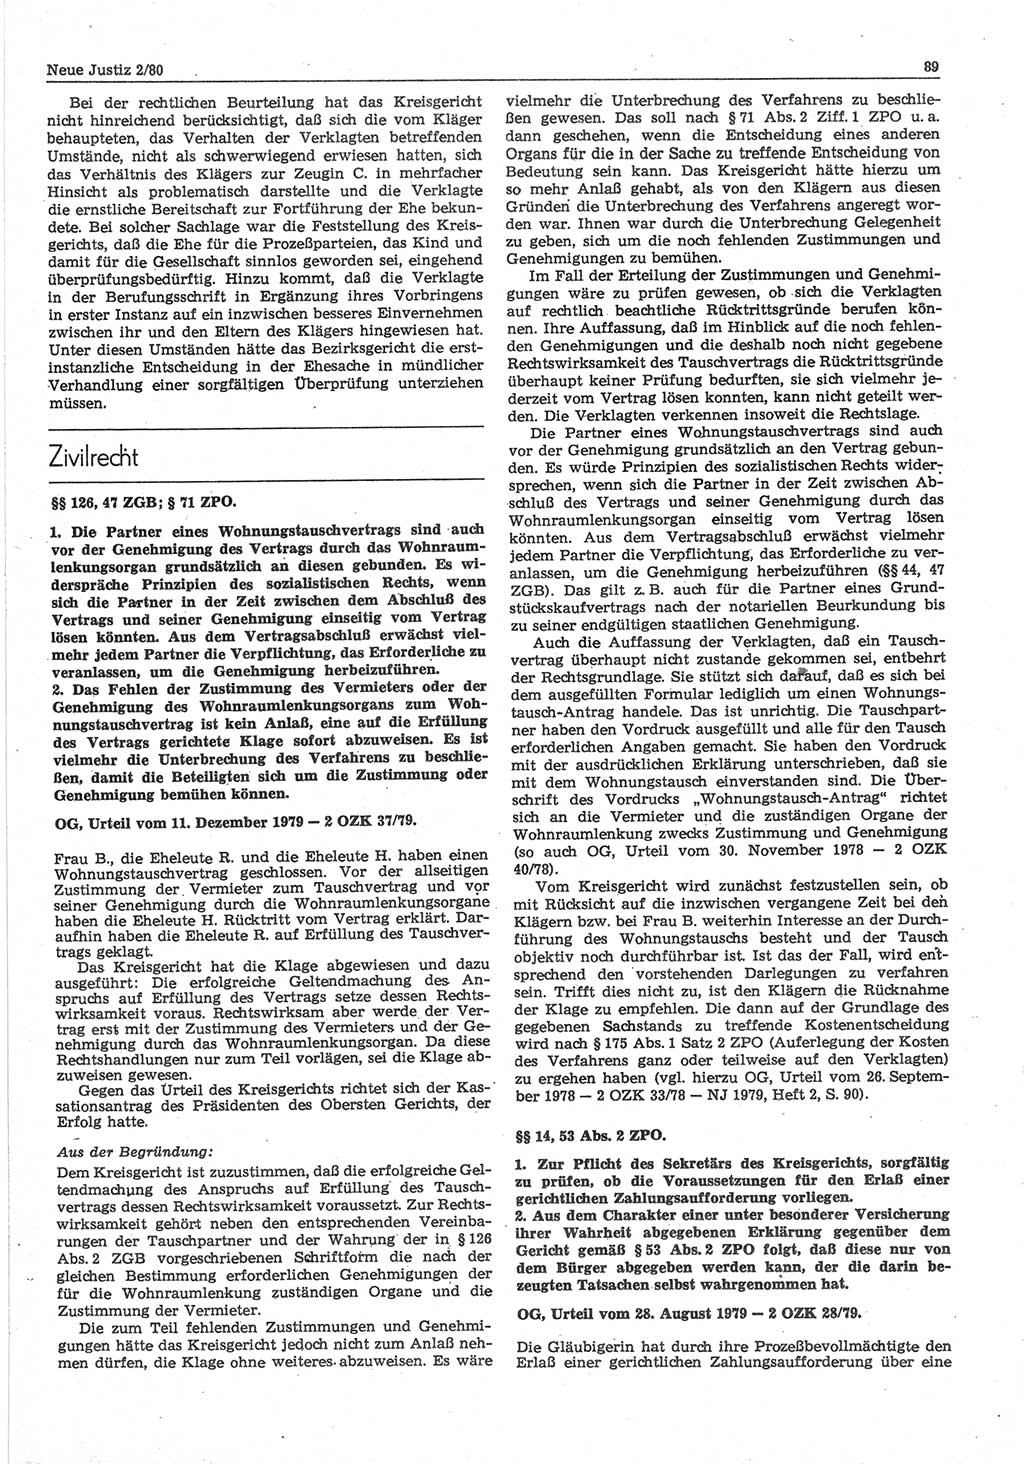 Neue Justiz (NJ), Zeitschrift für sozialistisches Recht und Gesetzlichkeit [Deutsche Demokratische Republik (DDR)], 34. Jahrgang 1980, Seite 89 (NJ DDR 1980, S. 89)